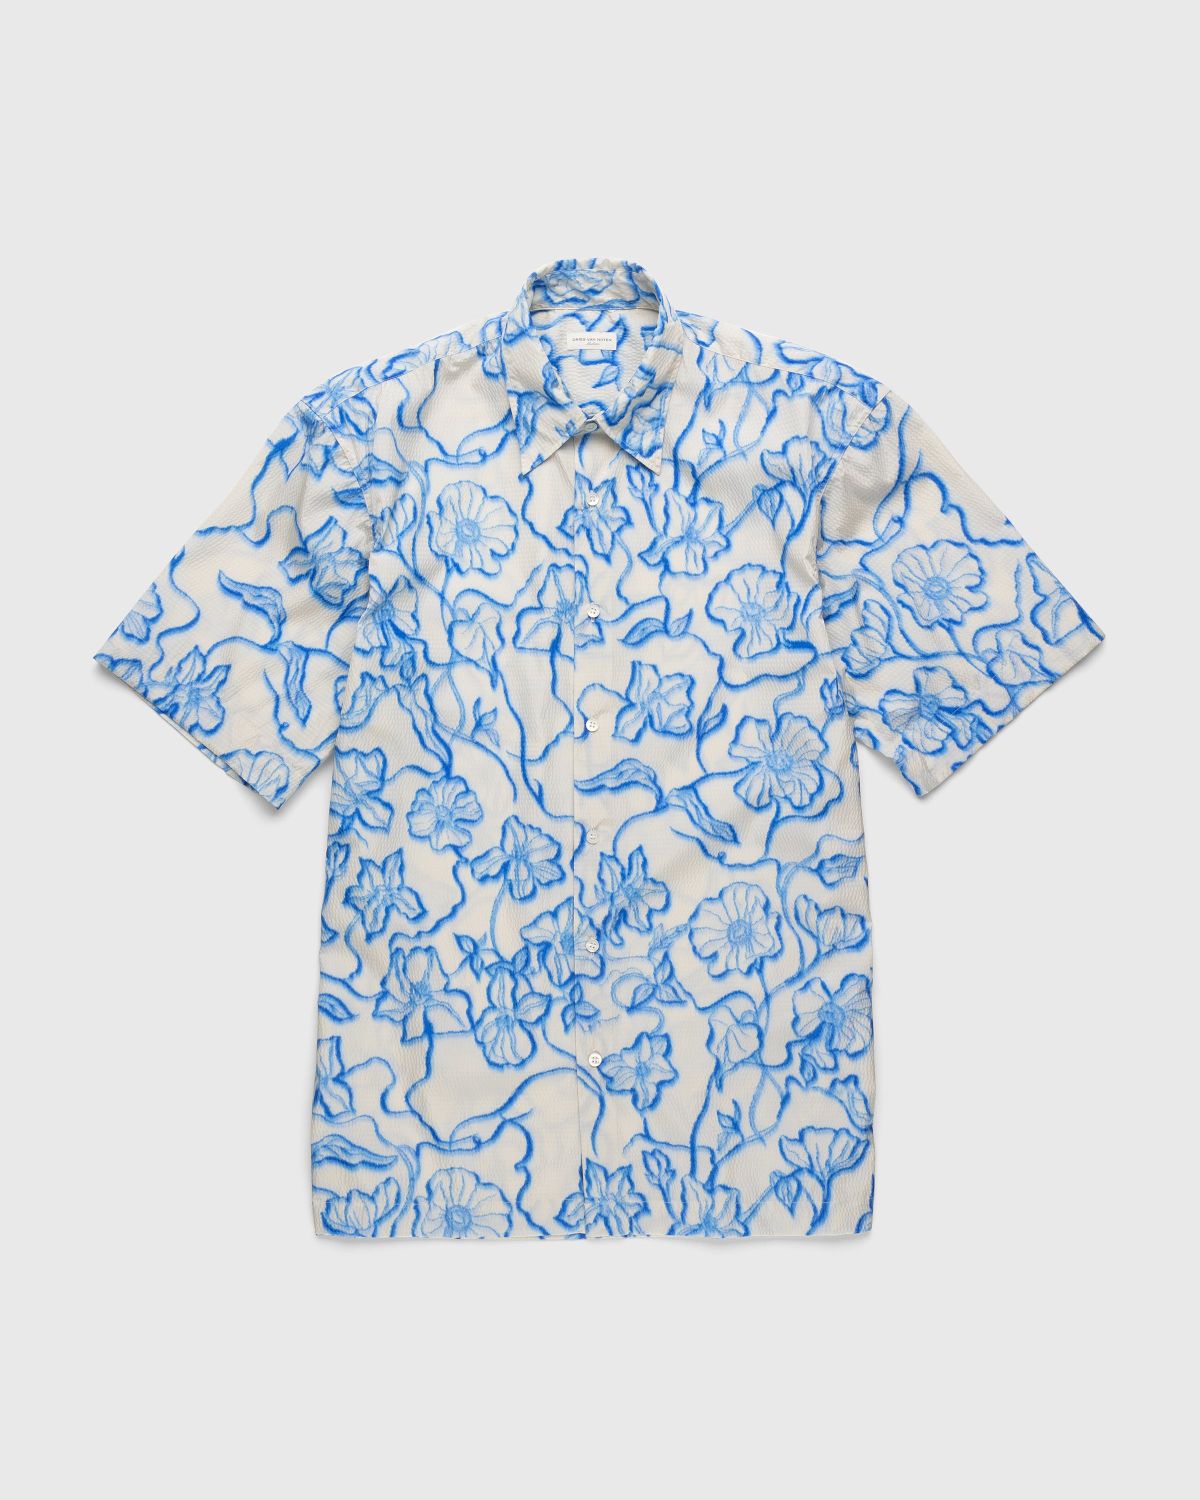 Dries van Noten – Cassidye Shirt Blue - Shirts - Blue - Image 1